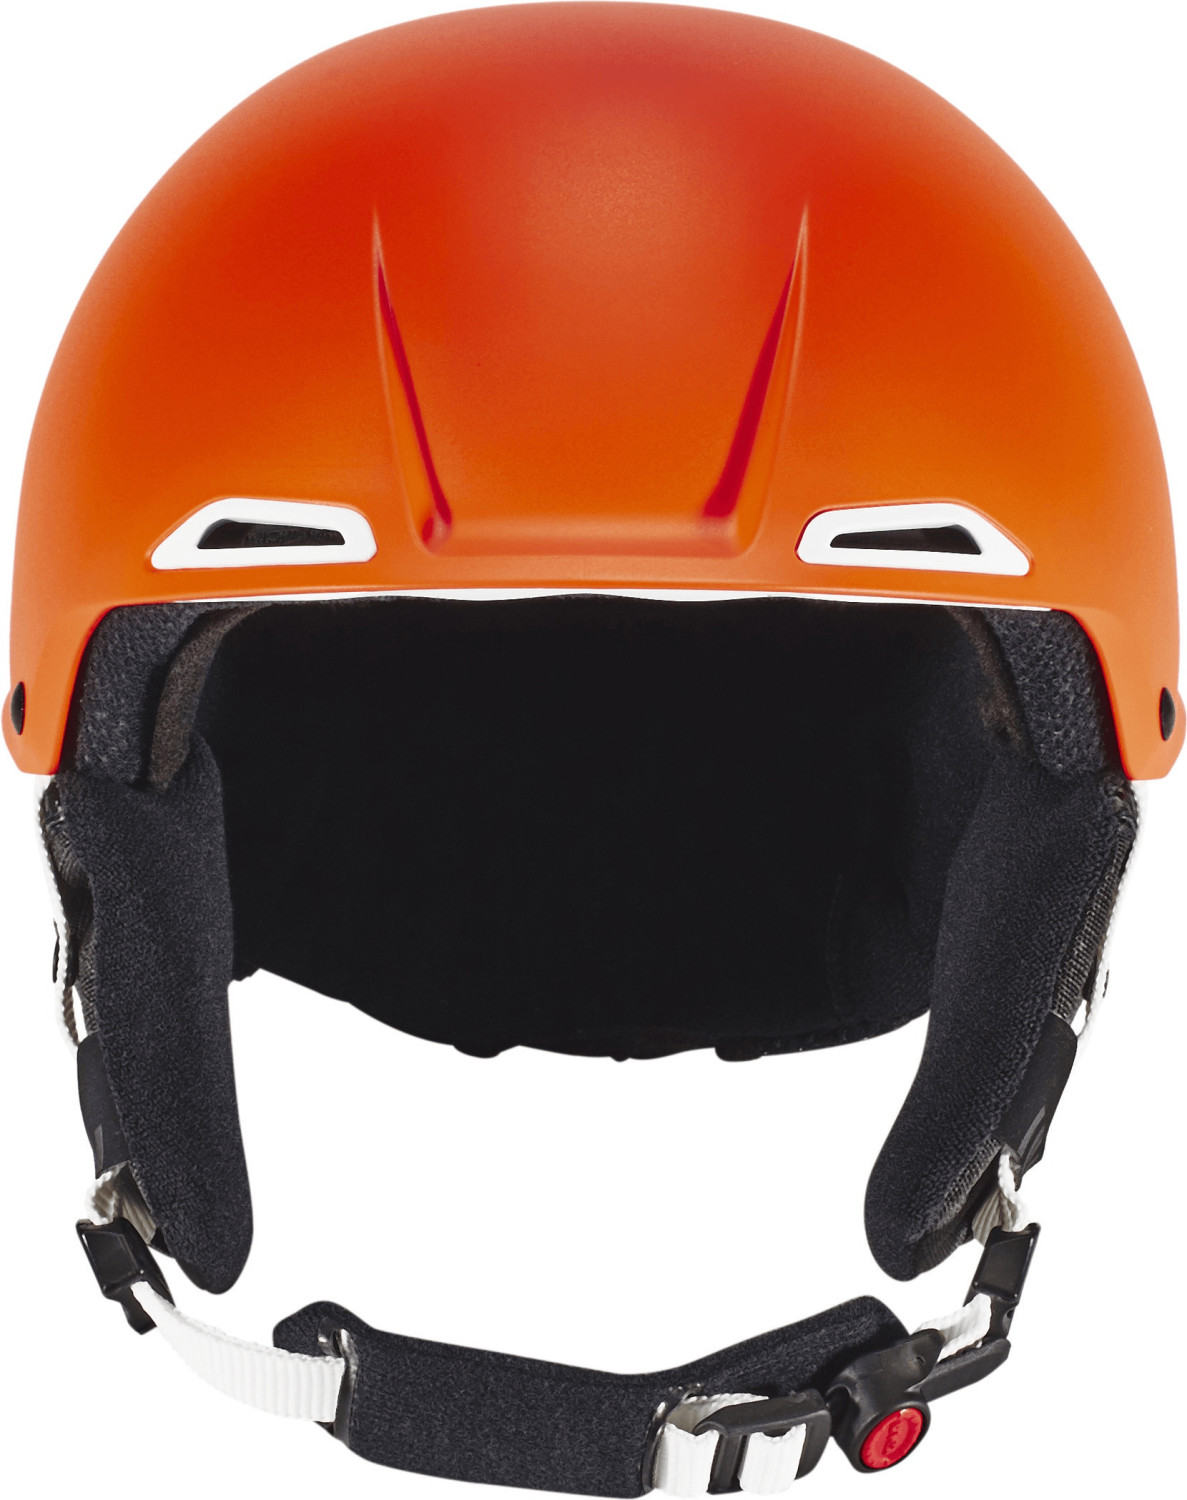 UVEX JAKK OCTO サイズ59-62 ヘルメット - スキー